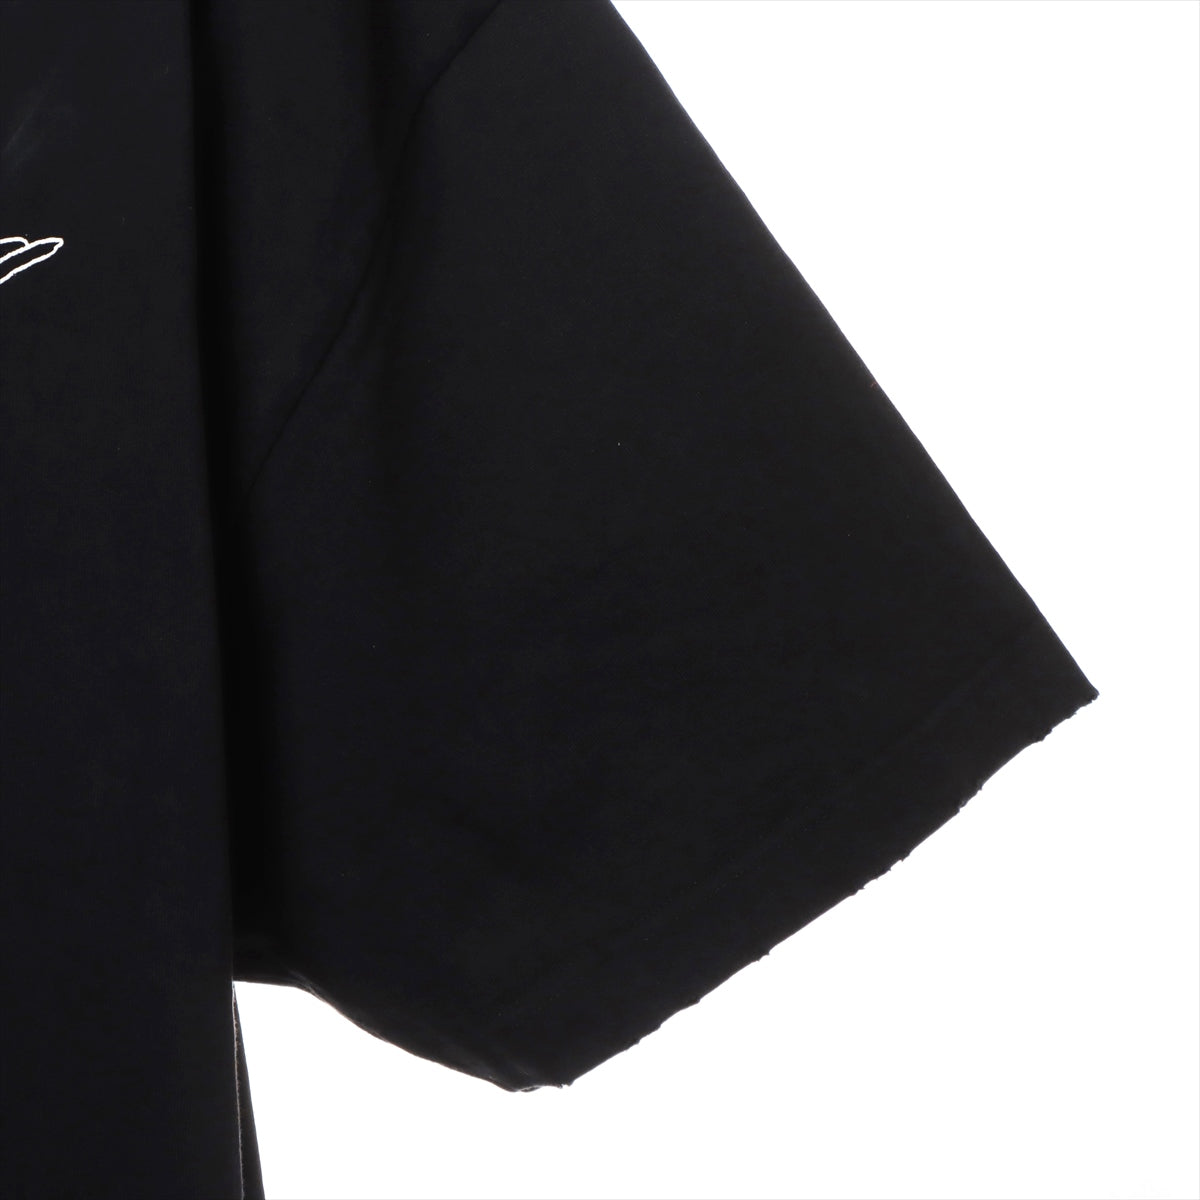 バレンシアガ 20年 コットン Tシャツ XS メンズ ブラック  641614